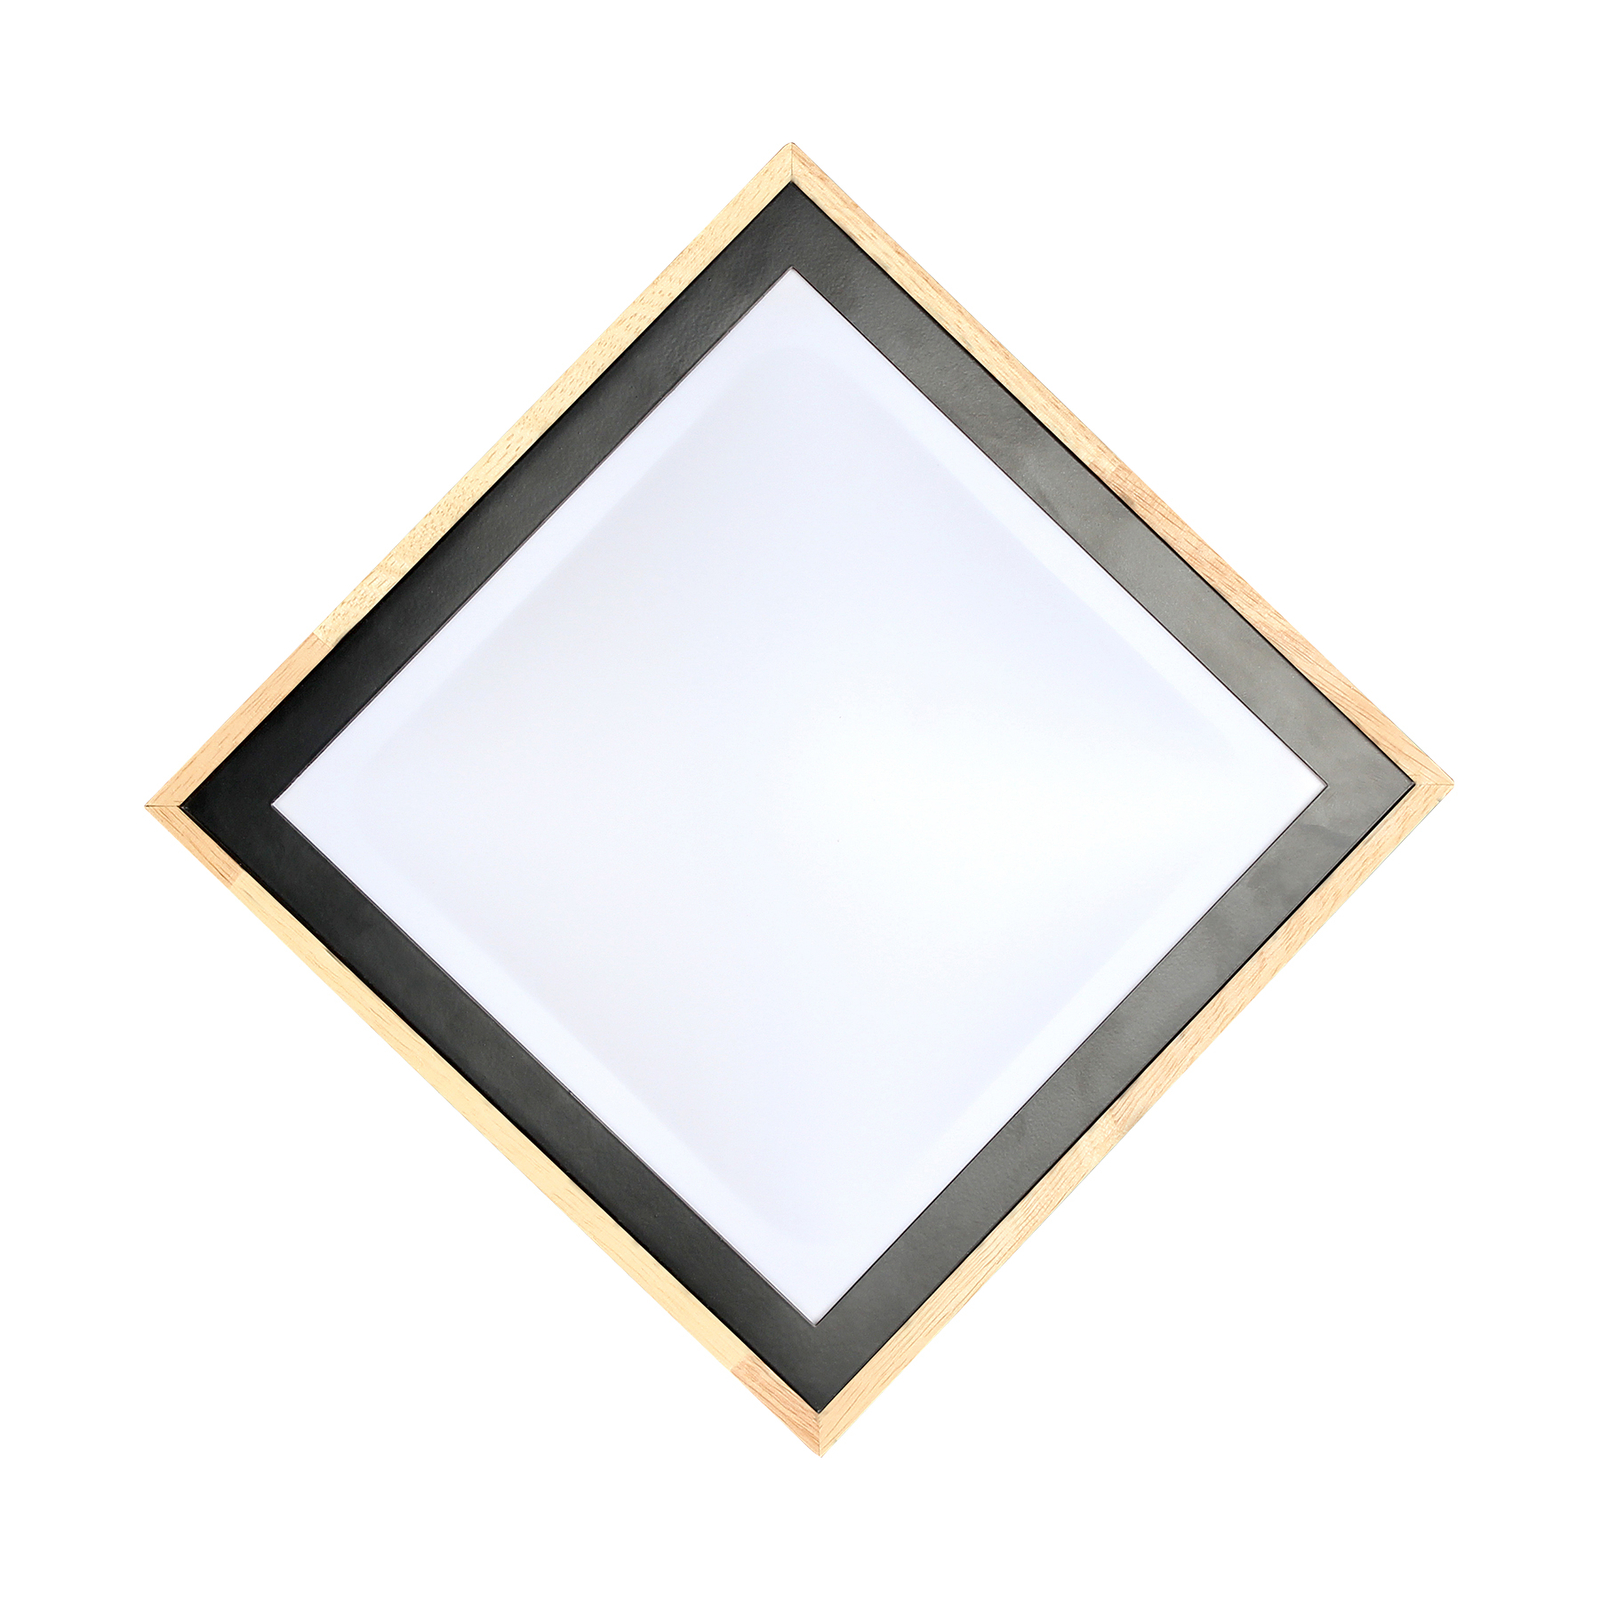 Solstar LED ceiling light, angular 28.5 x 28.5 cm